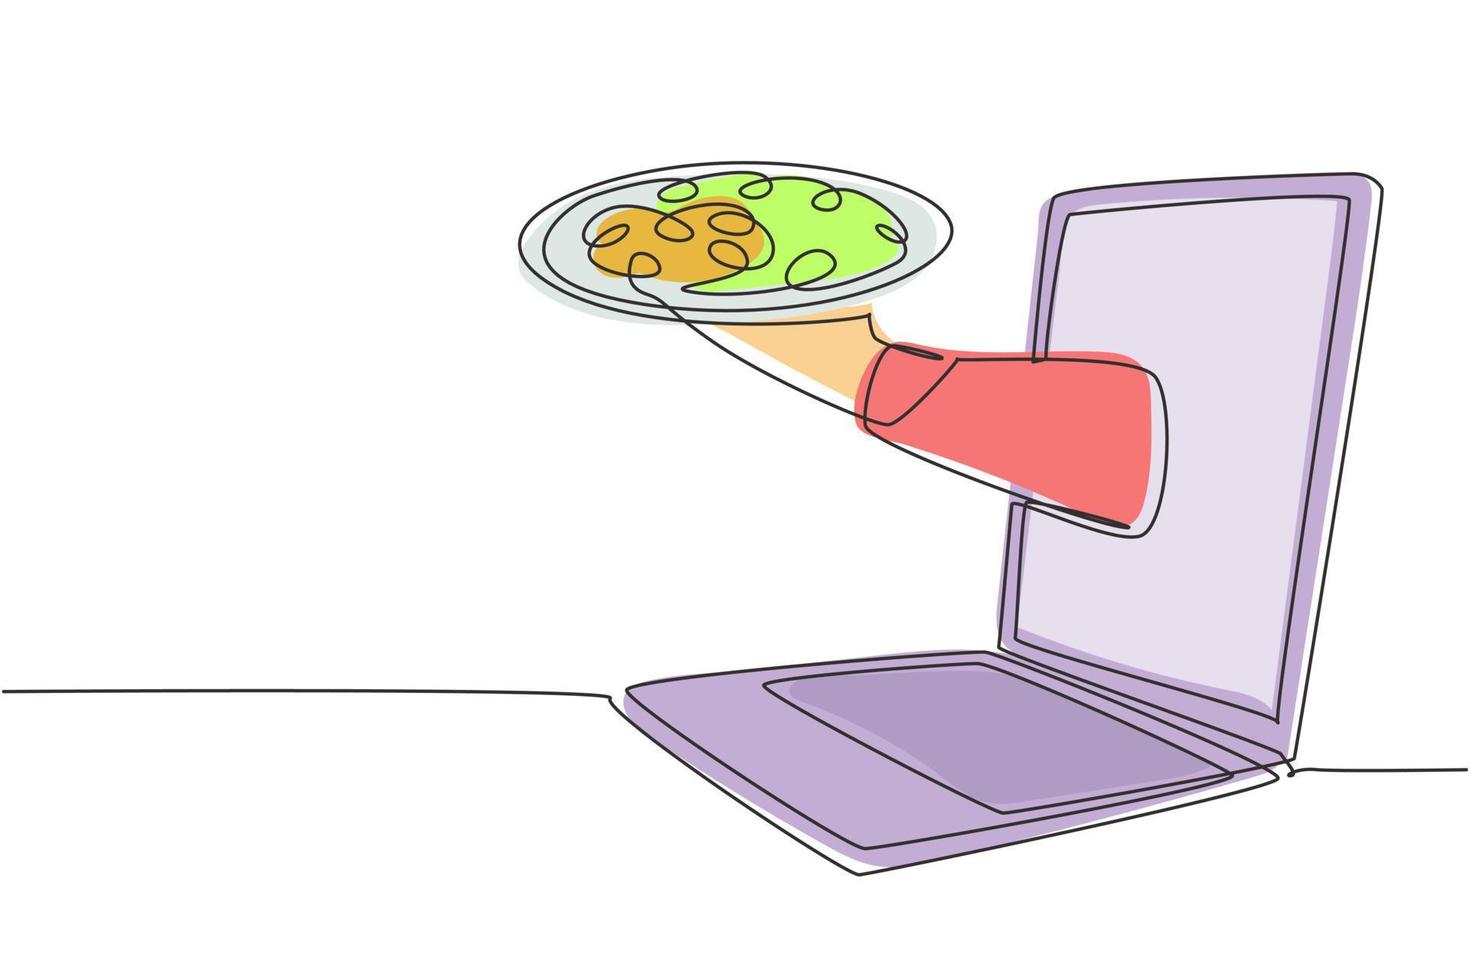 kontinuerlig en rad ritning händer ut från laptop skärm med facket öppen för att servera pizza. e-butik. beställa mat digitalt. online leveransservice koncept. enda rad rita design vektorgrafisk illustration vektor